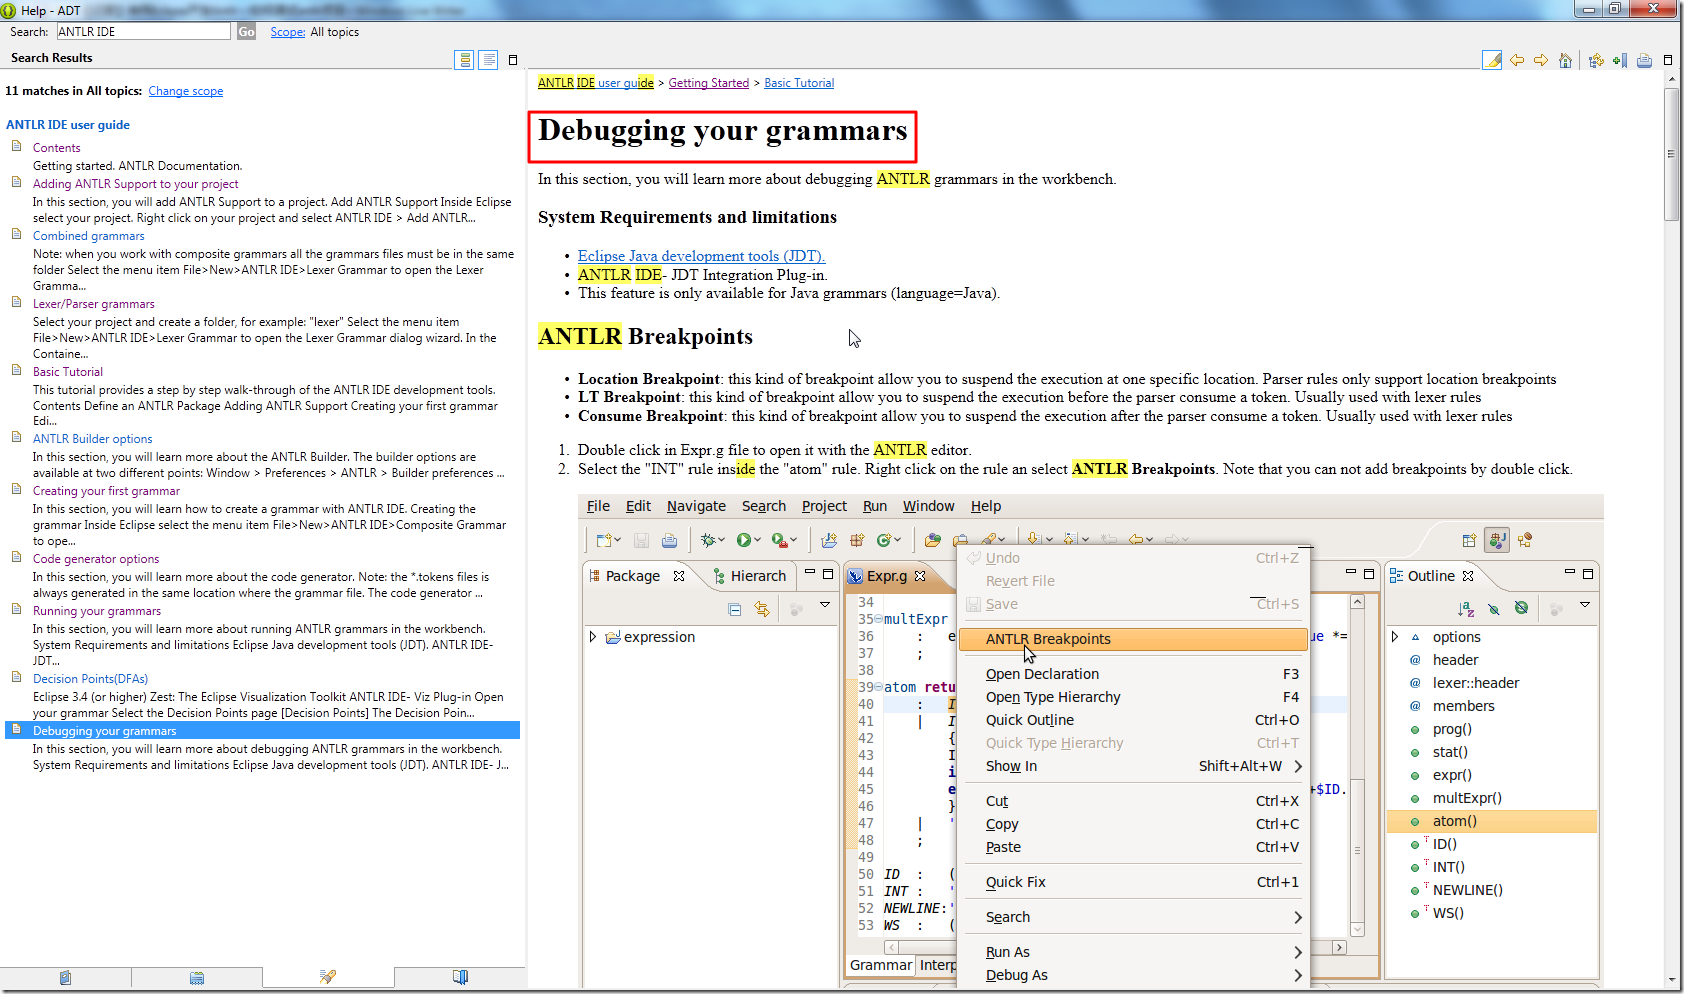 help for debugging your grammars for antlr